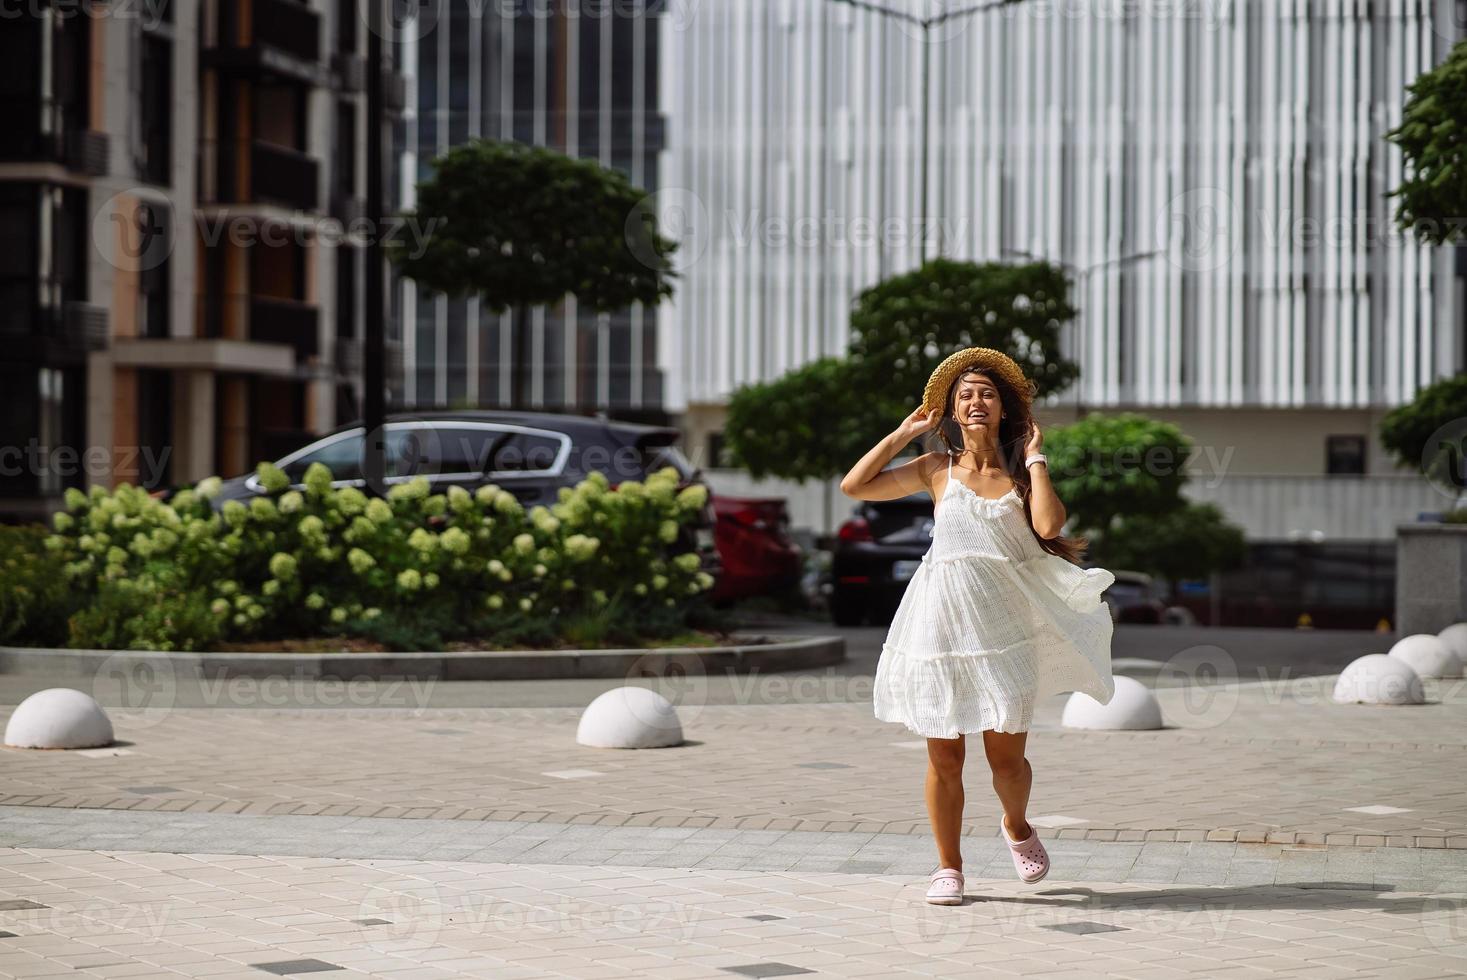 mooi mooi vrouw in wit jurk wandelen Bij stad straat foto